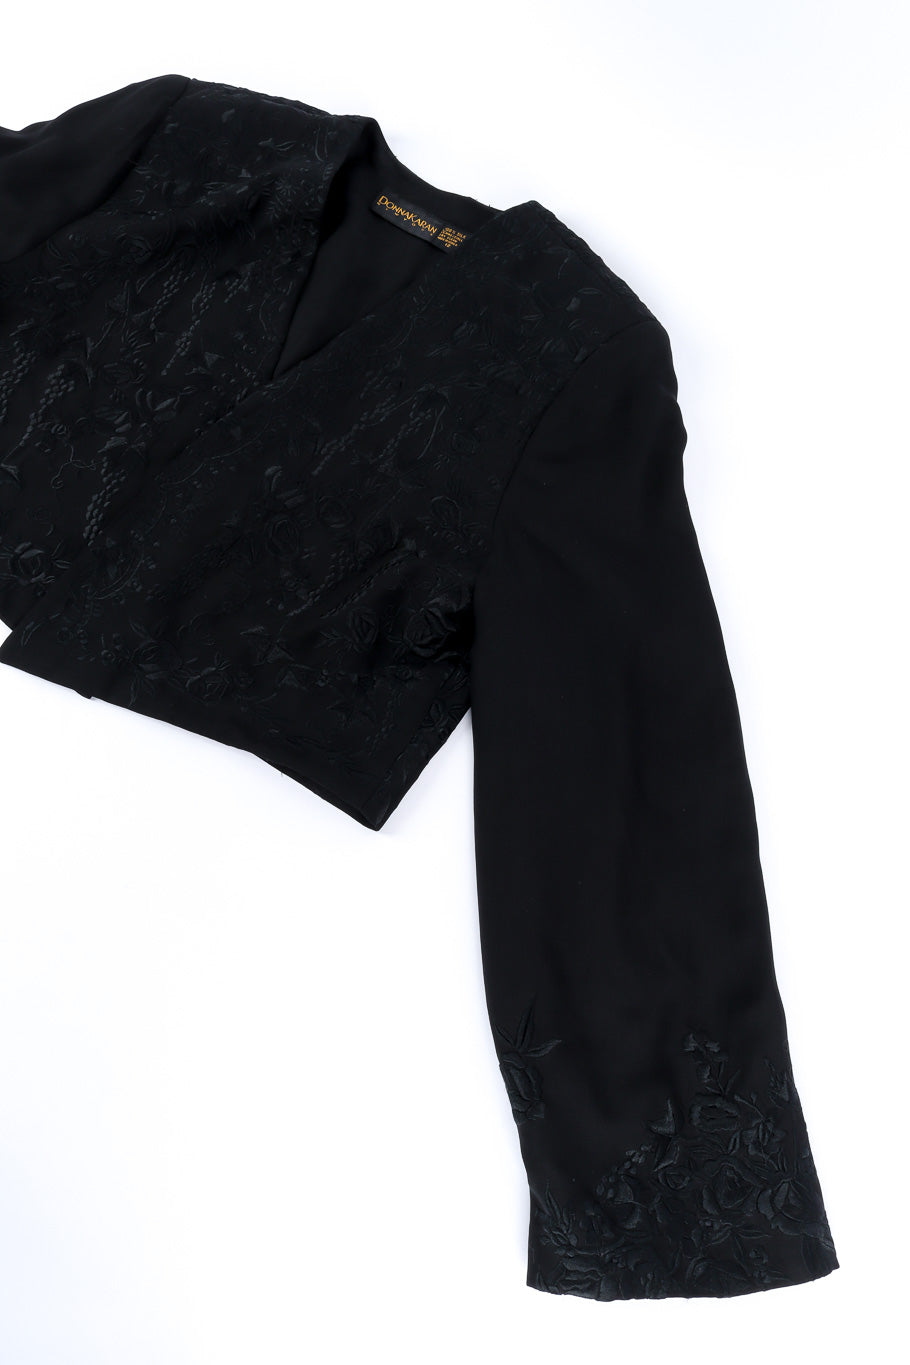 Jacket and skirt set by Donna Karan jacket flat lay sleeve @recessla